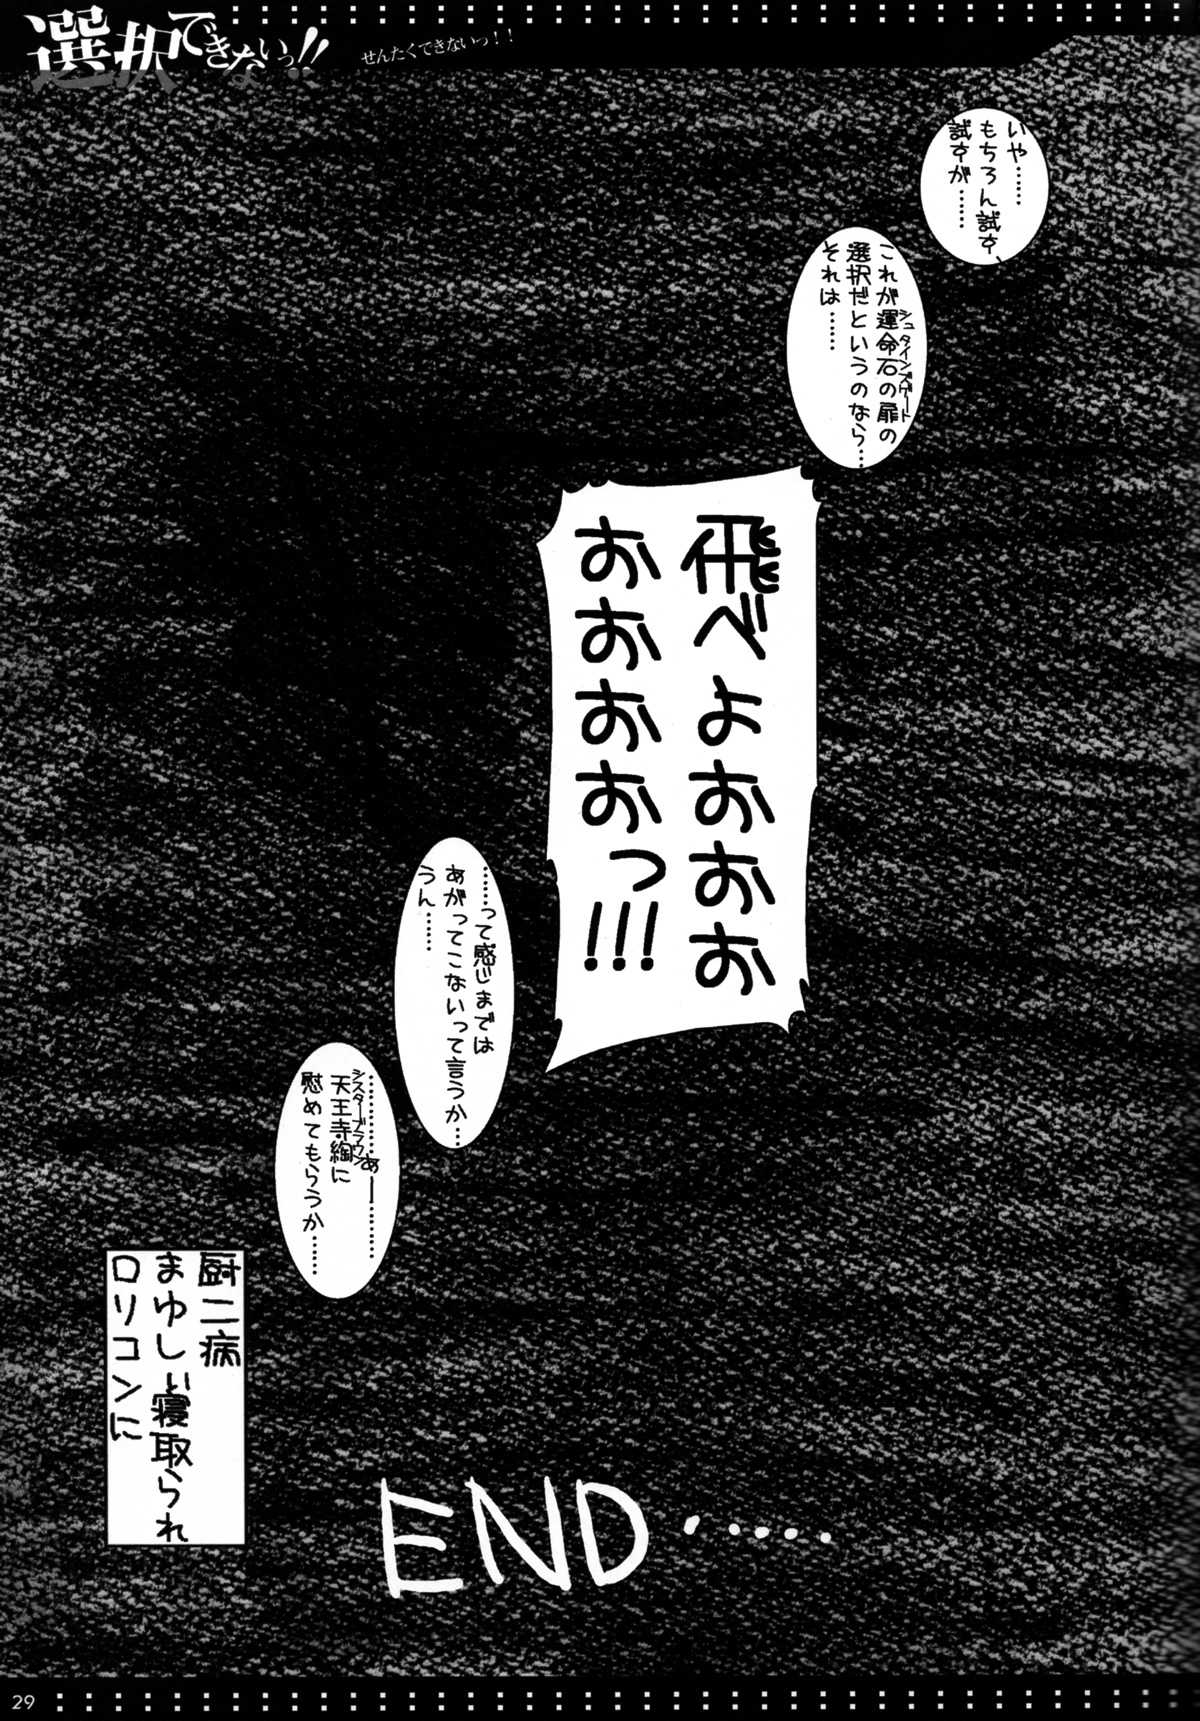 (C80)[Harthnir (Misakura Nankotsu)]Sentaku Dekinai!! (Steins;Gate) [ハースニール(みさくらなんこつ)] 選択できないっ!! (Steins;Gate) (C80)